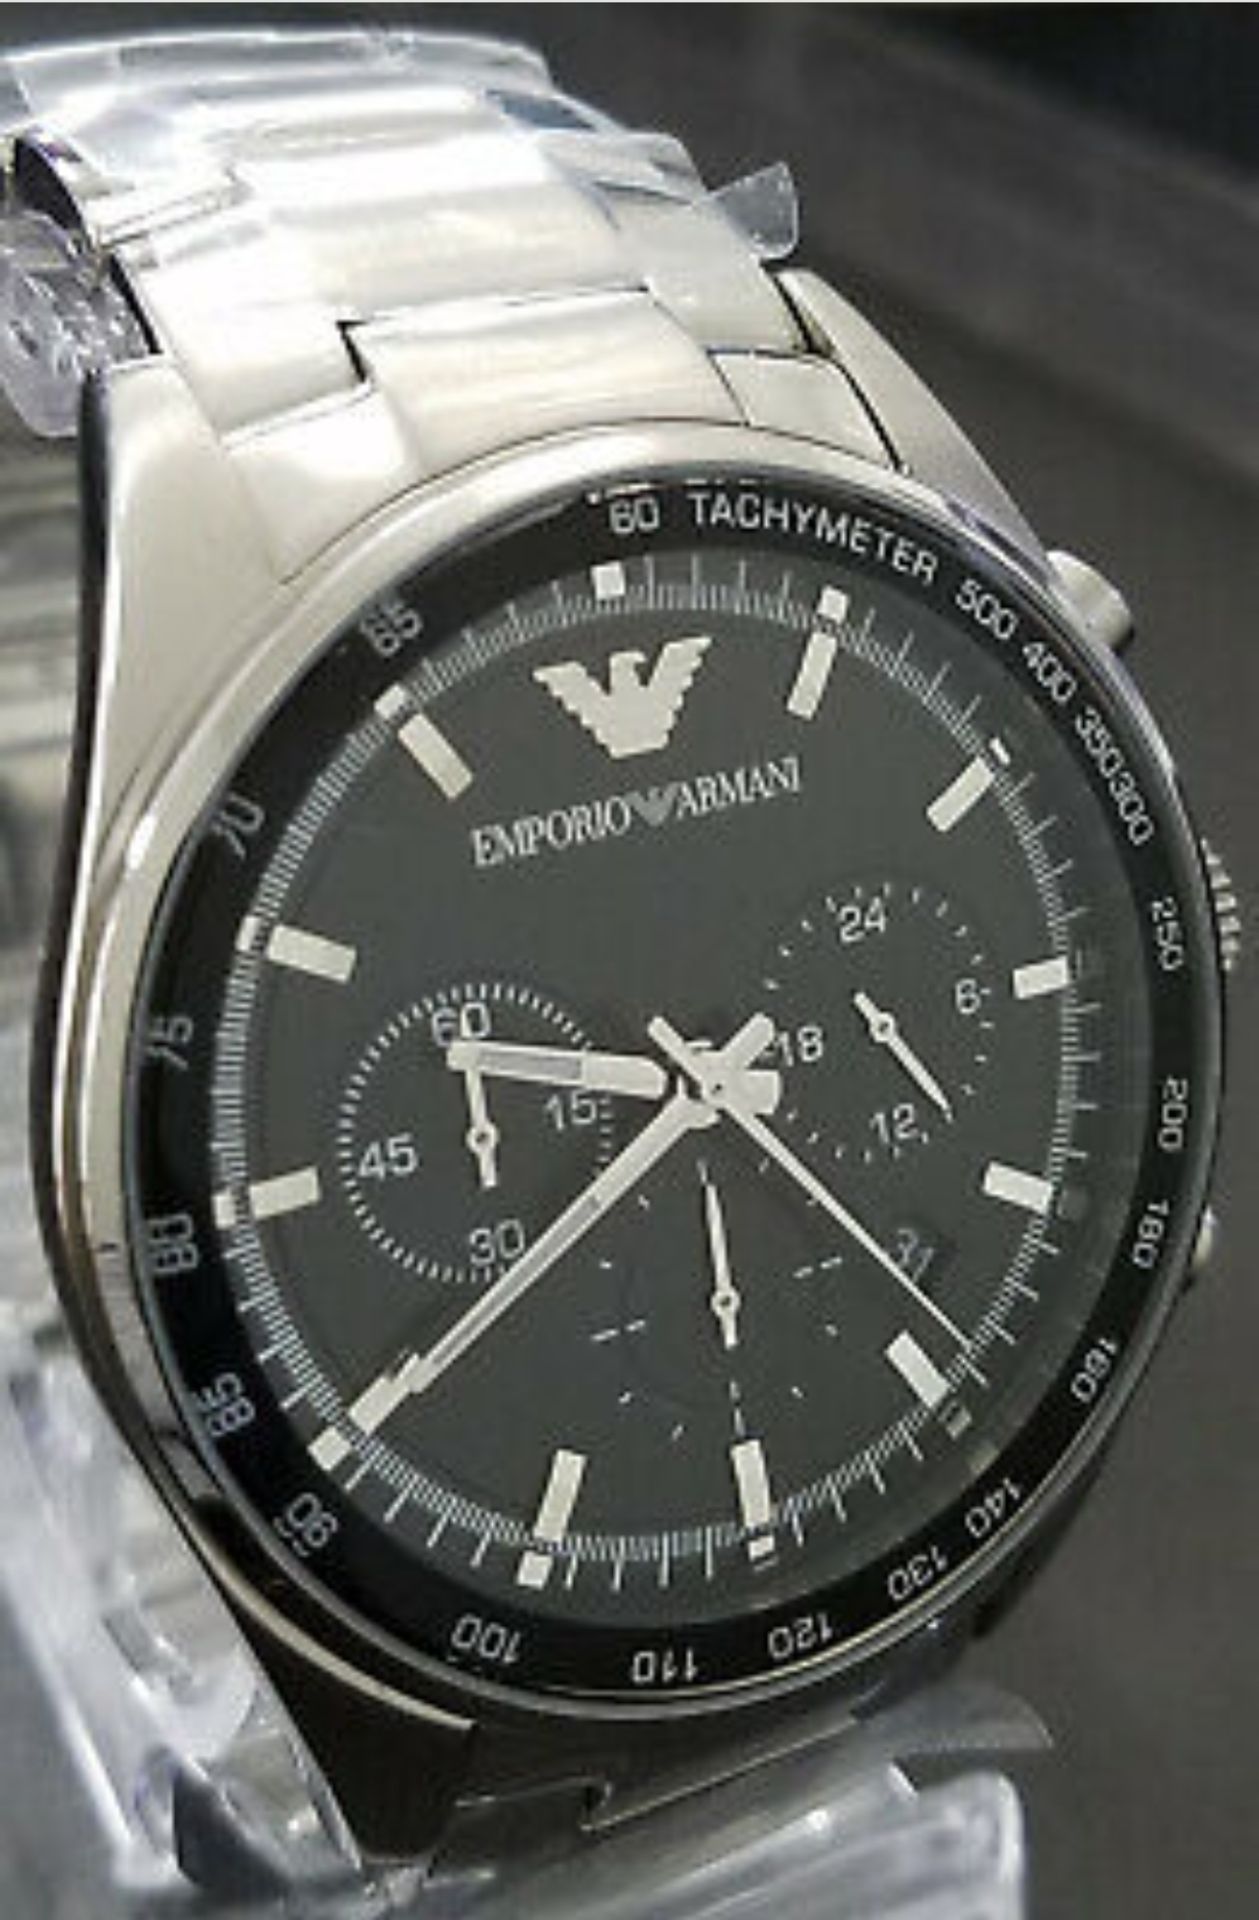 Emporio Armani AR5980 Men's Sportivo Black Dial Silver Bracelet Quartz Chronograph Watch - Image 5 of 7